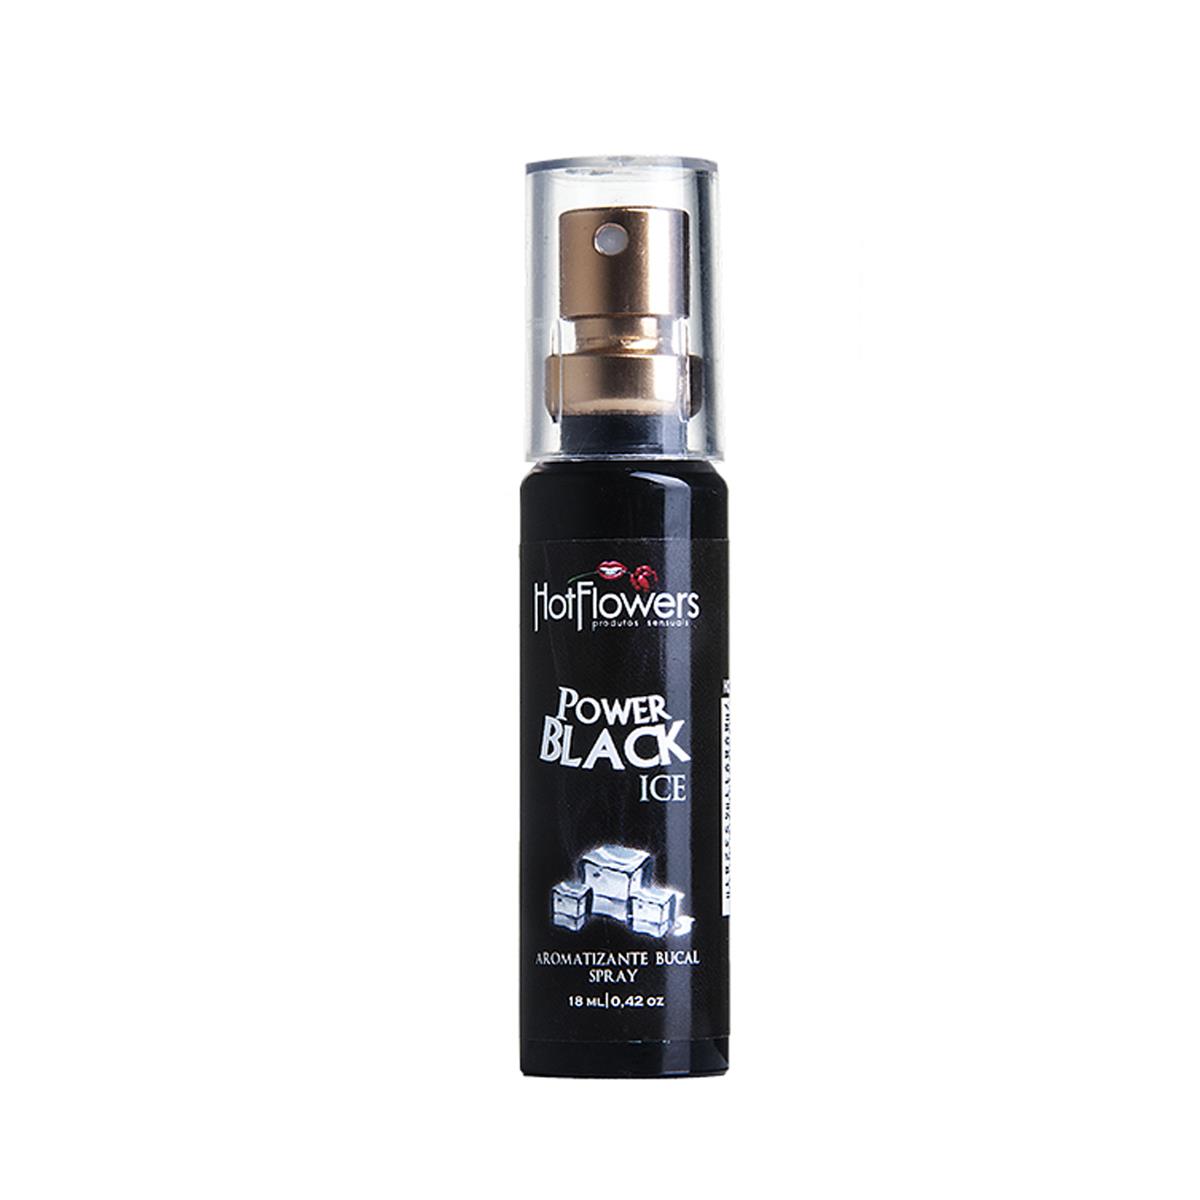 Aromatizante Bucal Power Black Ice Spray 18ml Hot Flowers - Miess